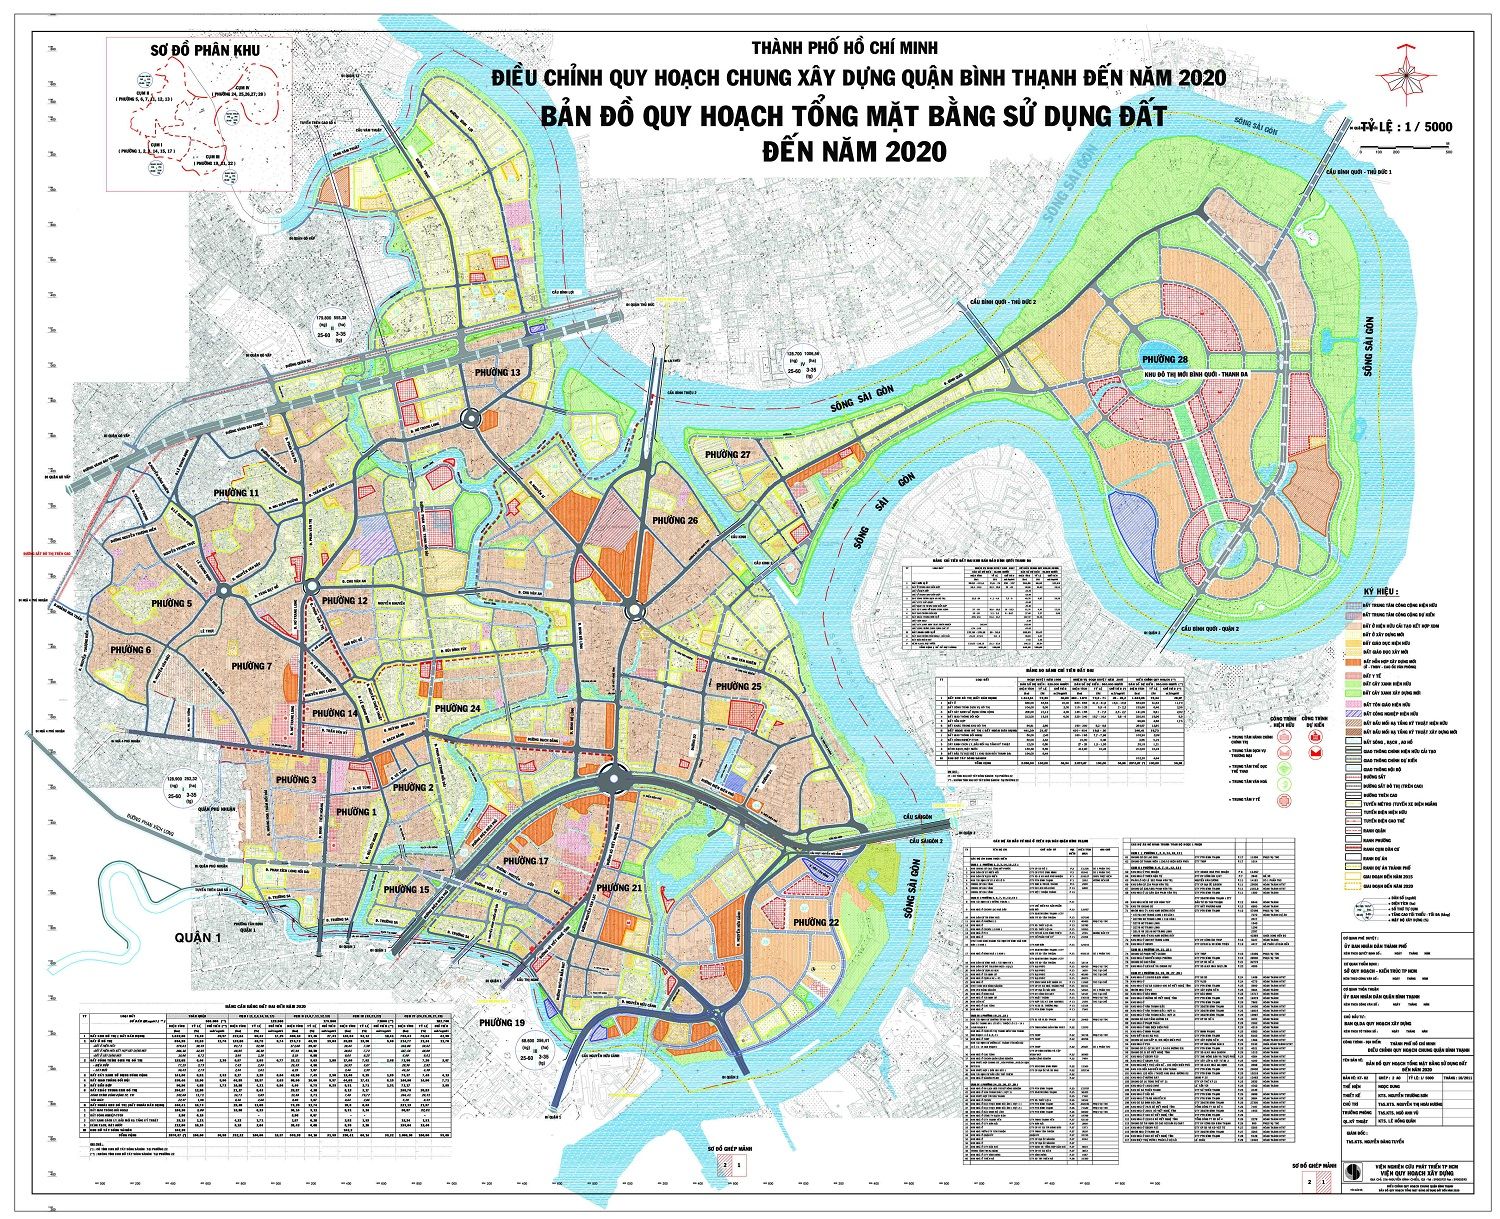 Sơ đồ, bản đồ quy hoạch quận Bình Thạnh thành phố Hồ Chí Minh đến năm 2020